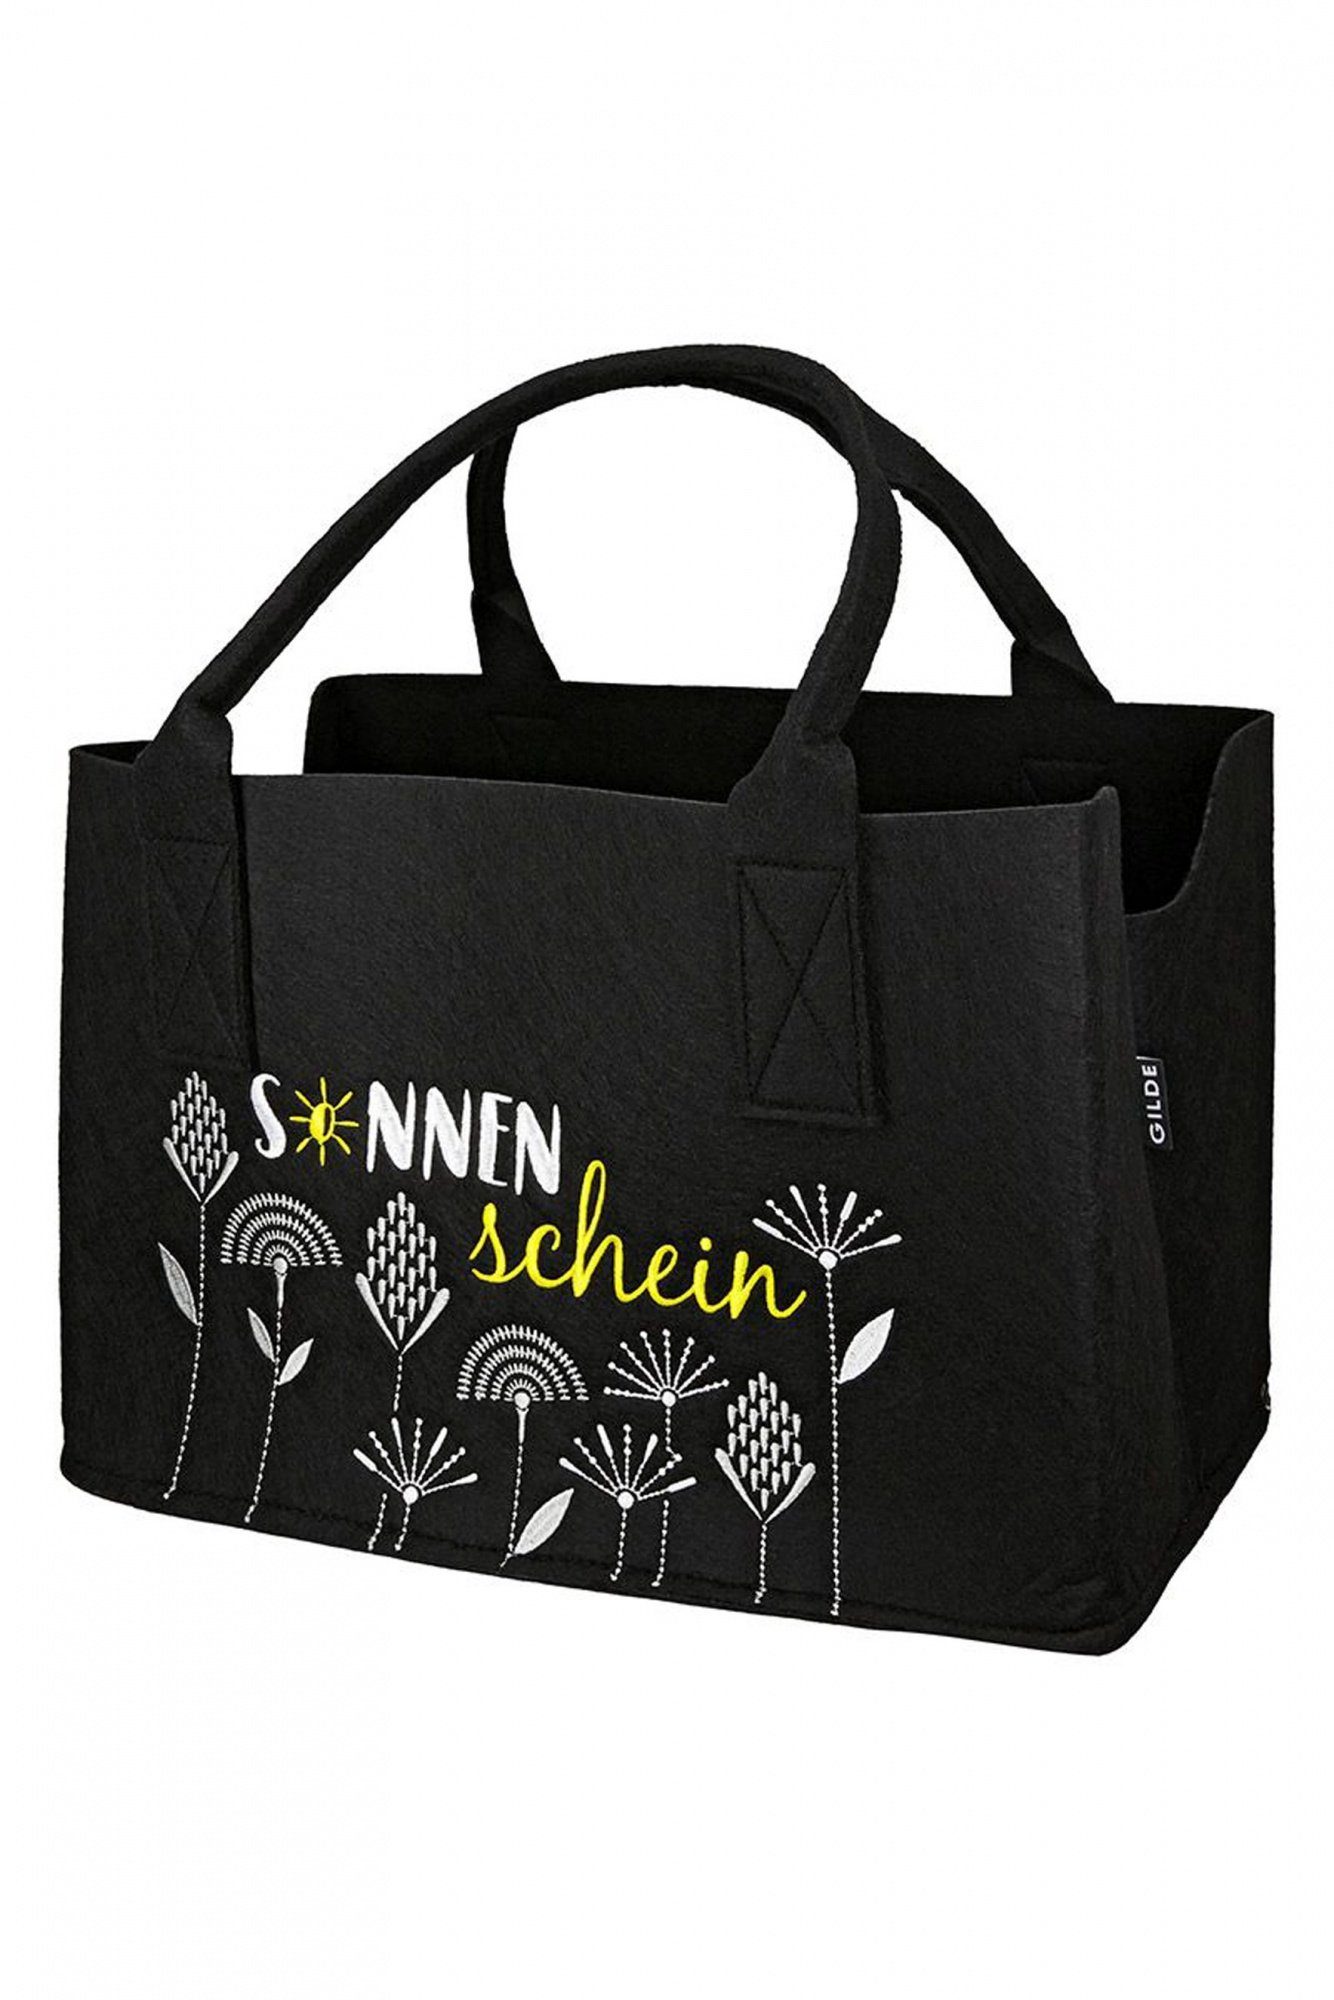 GILDE Gilde - Freizeittasche Filztasche - schwarz Fächerblumen-Sonnenschein,